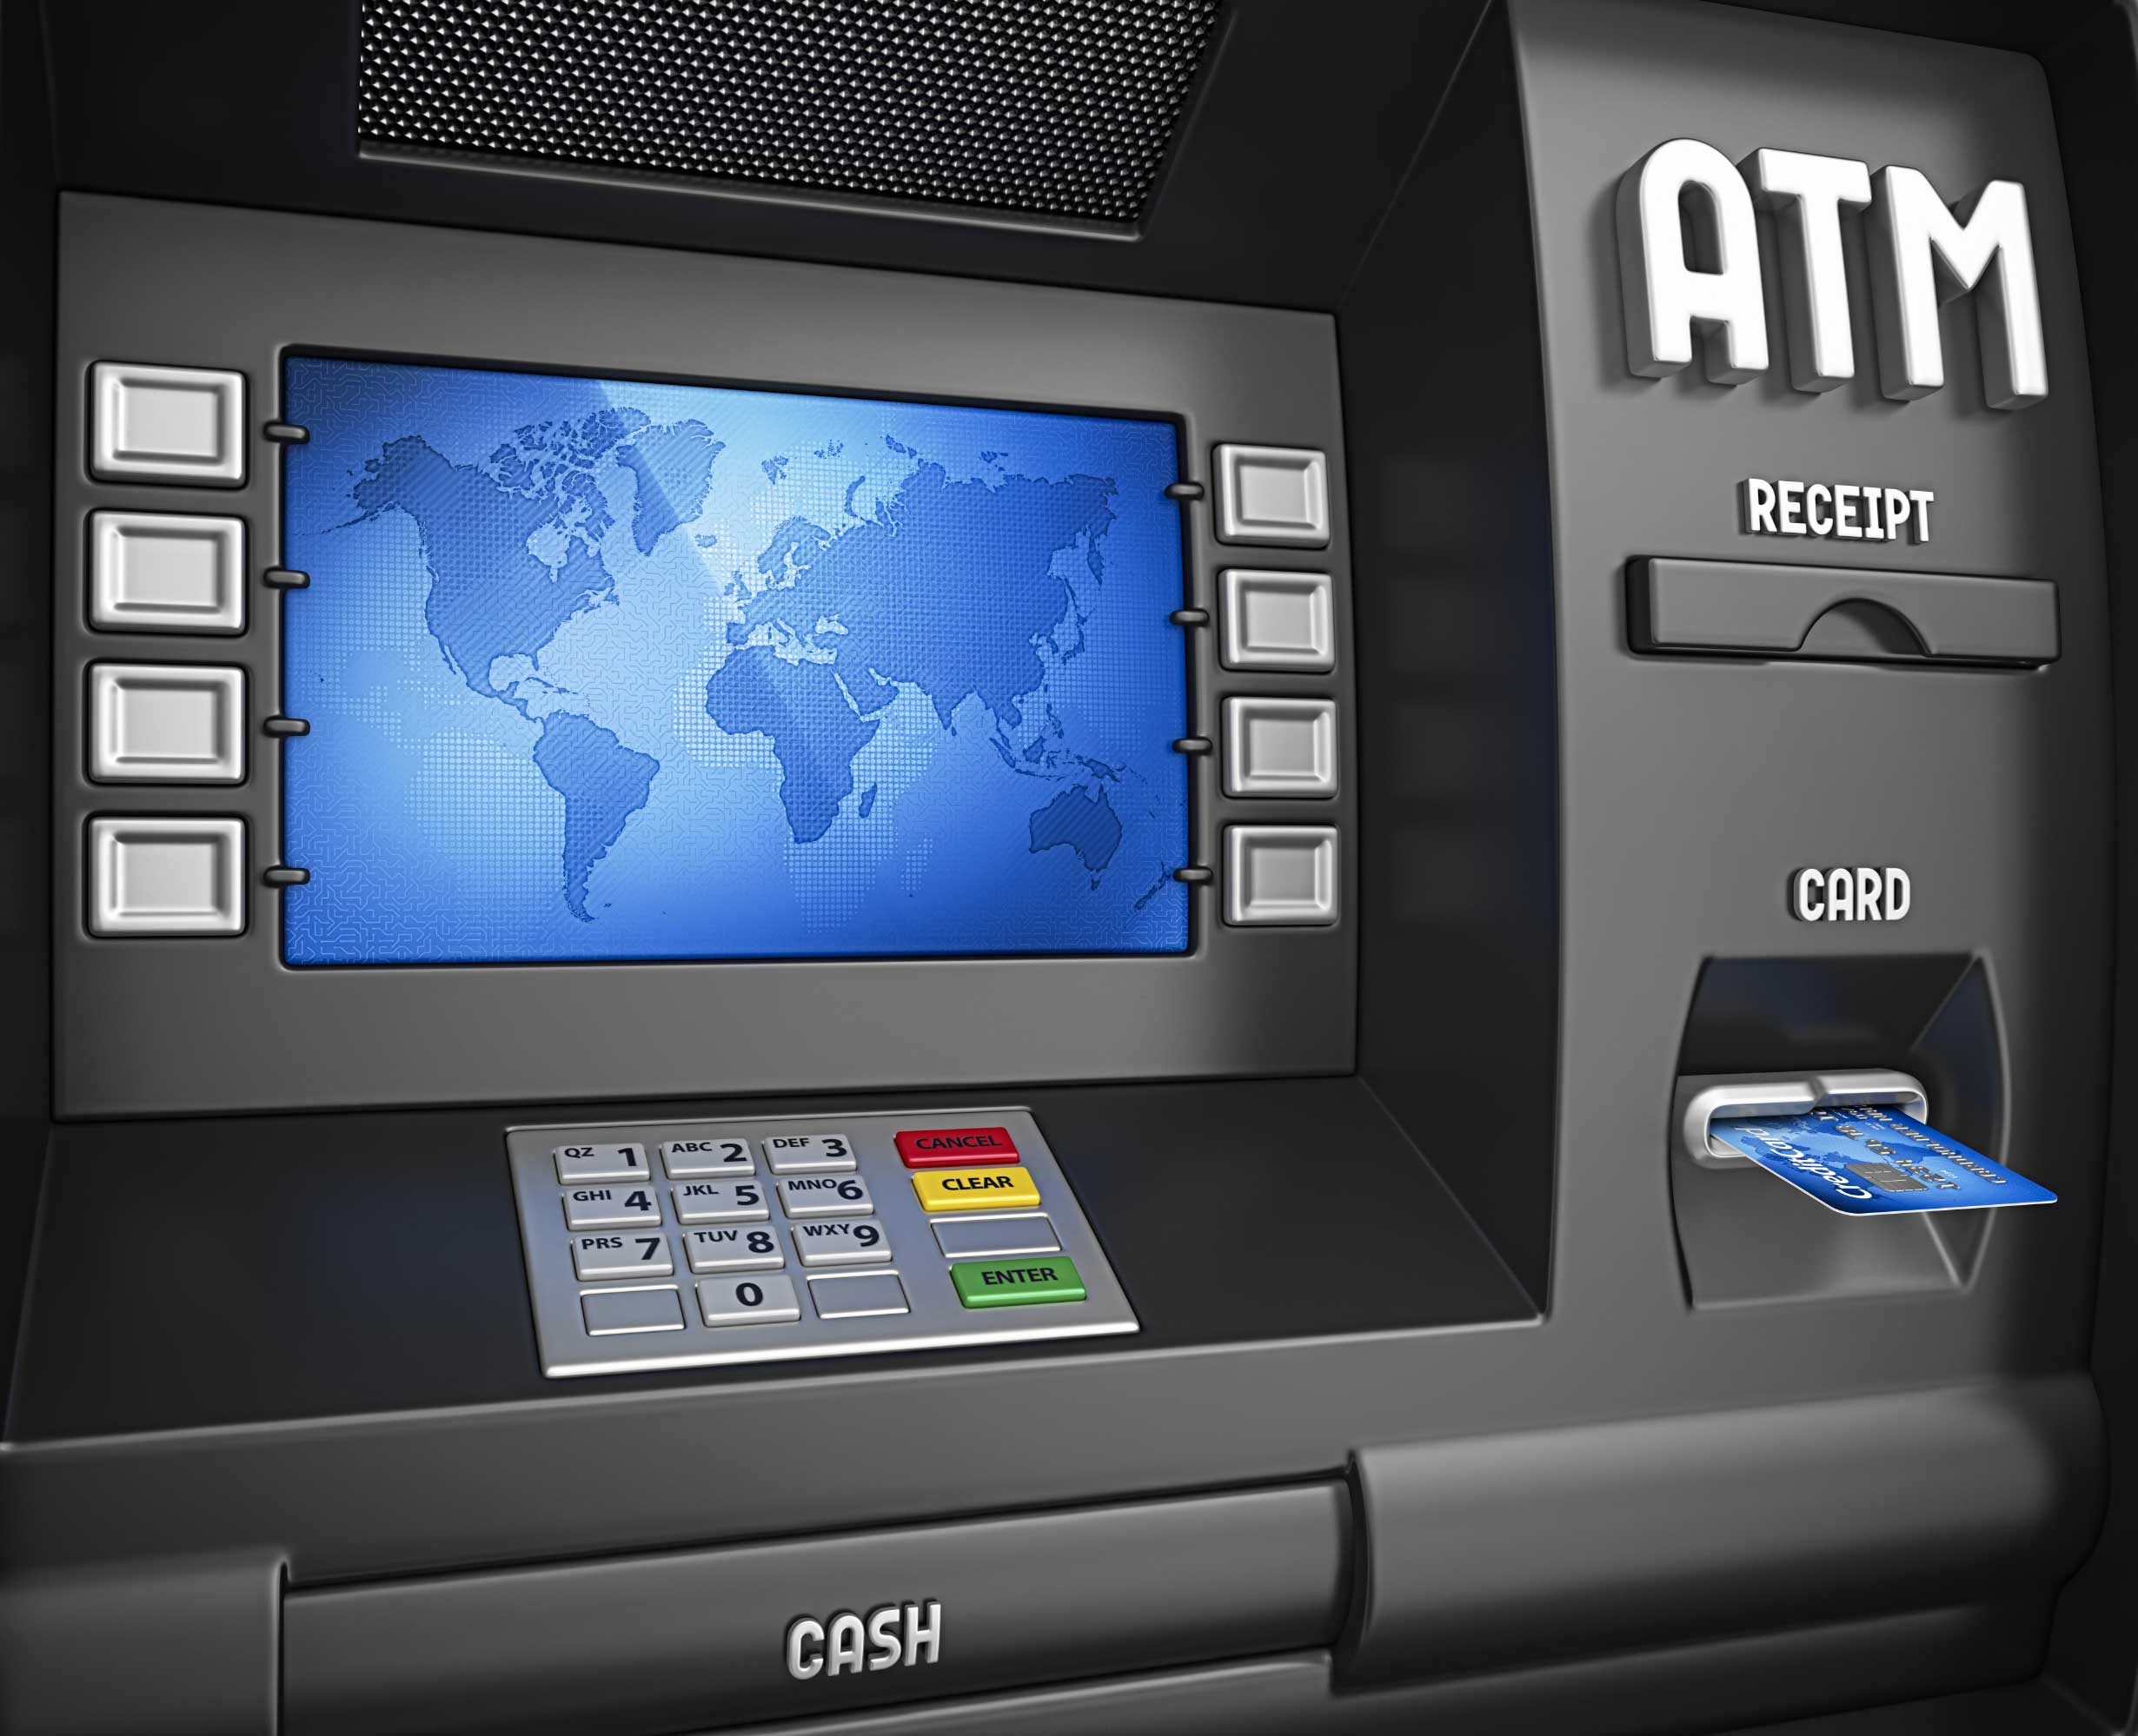 Զարուհի Բաթոյանը դիմել է ԿԲ՝ հաշմանդամություն ունեցող անձանց համար առևտրային բանկերի ավտոմատ գանձման մեքենաների (ATM) մատչելիության ապահովման հարցով